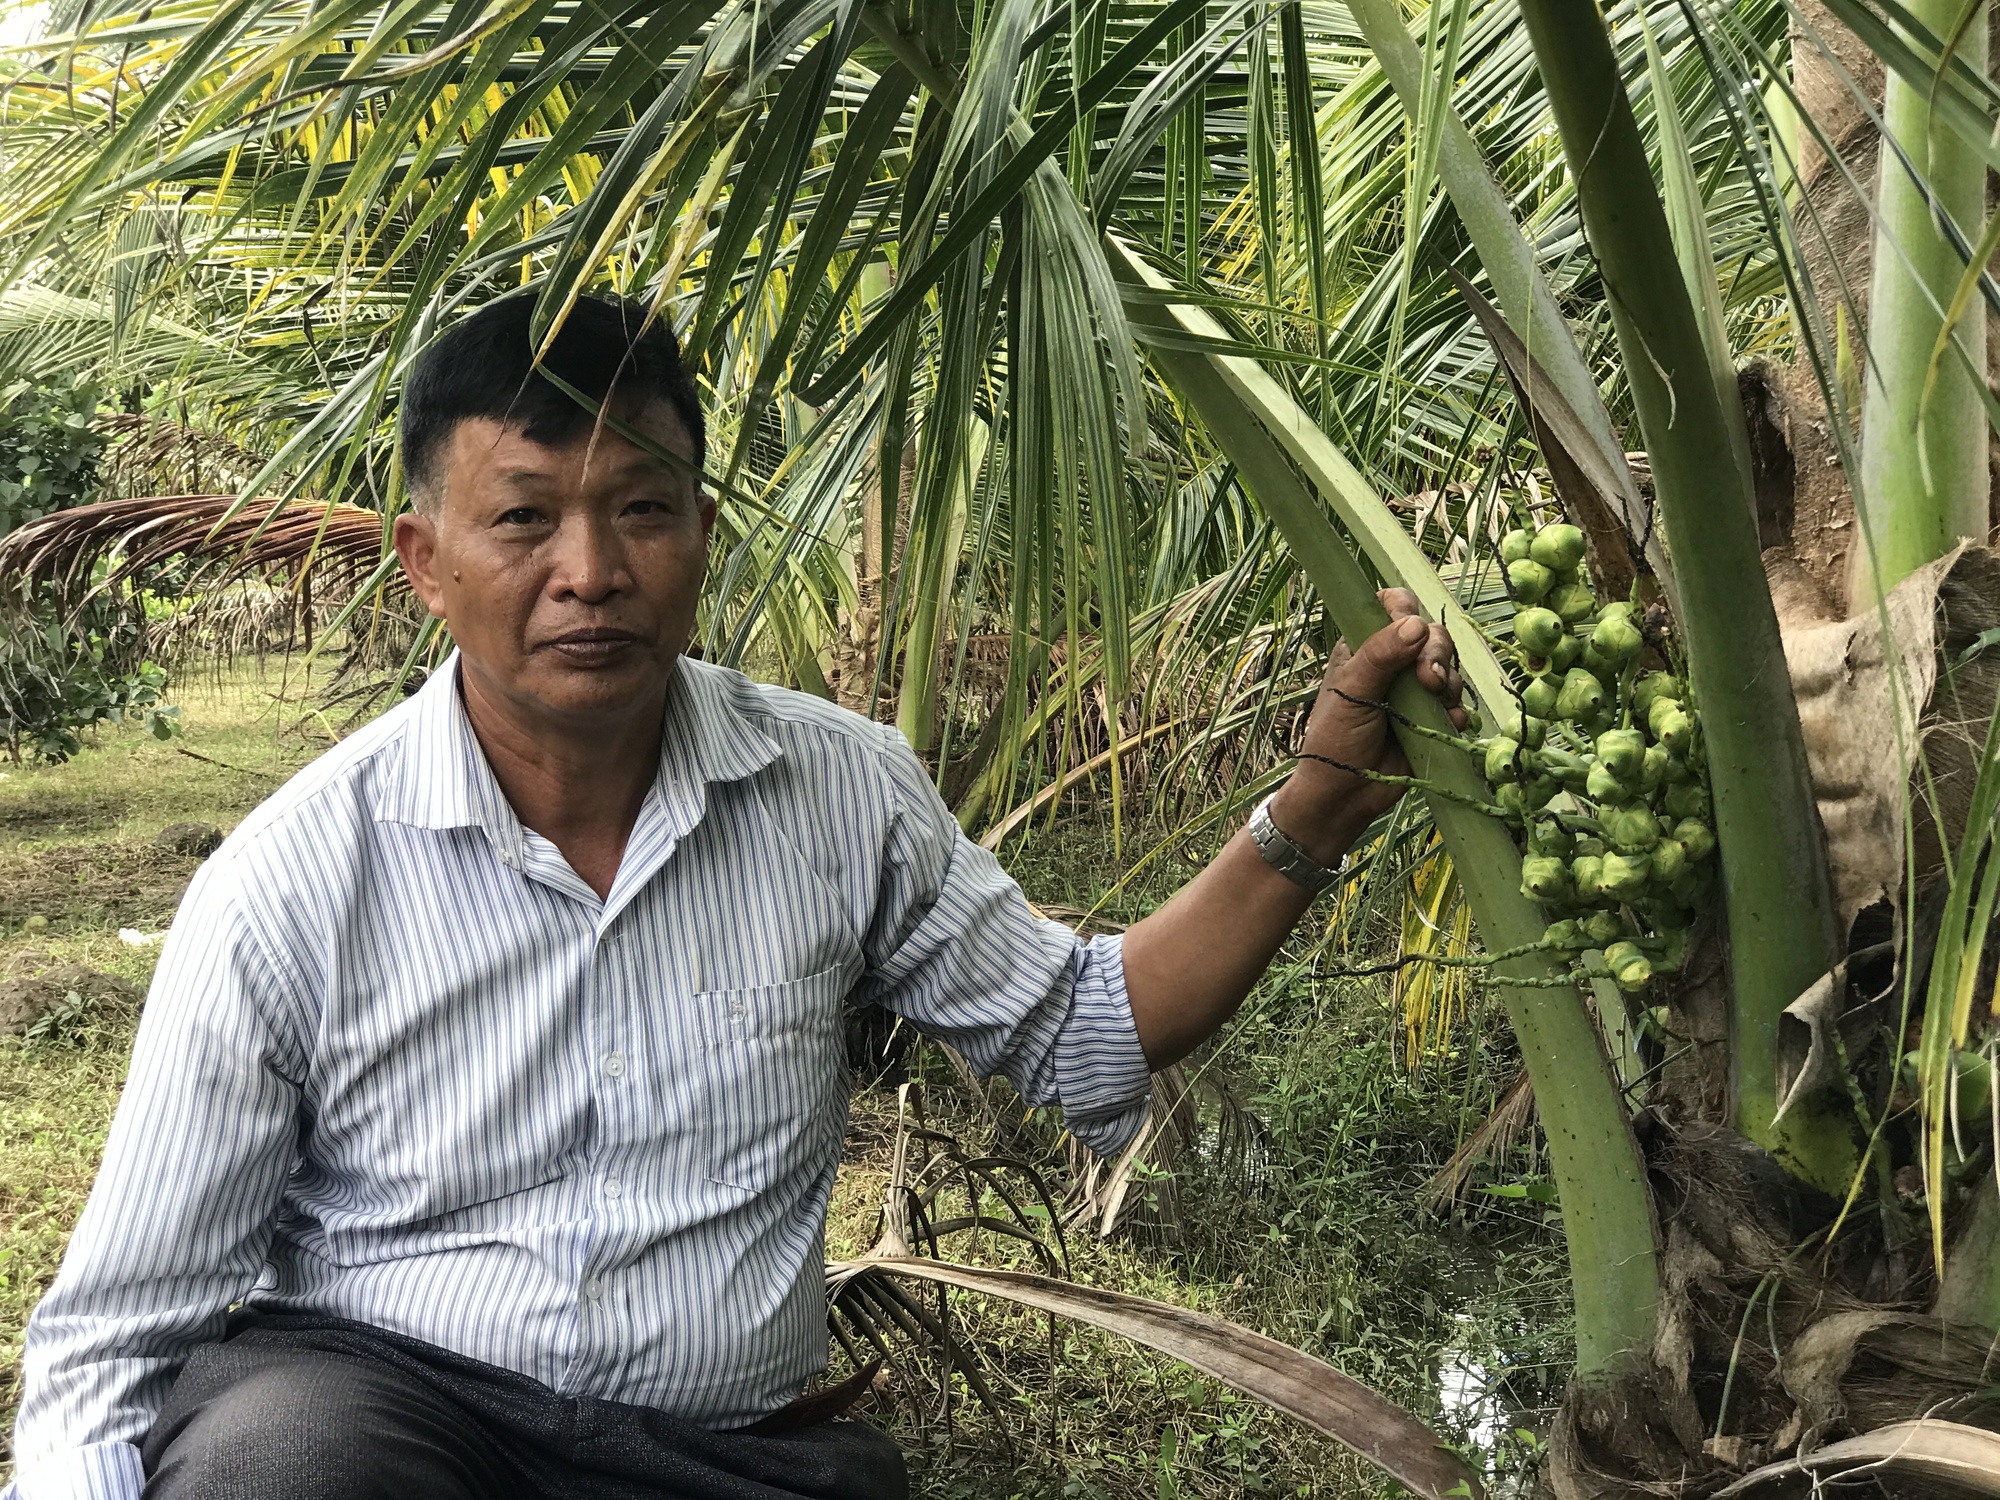 Bí quyết làm giàu của nông dân xuất sắc năm 2022 ở Đắk Nông - Ảnh 3.